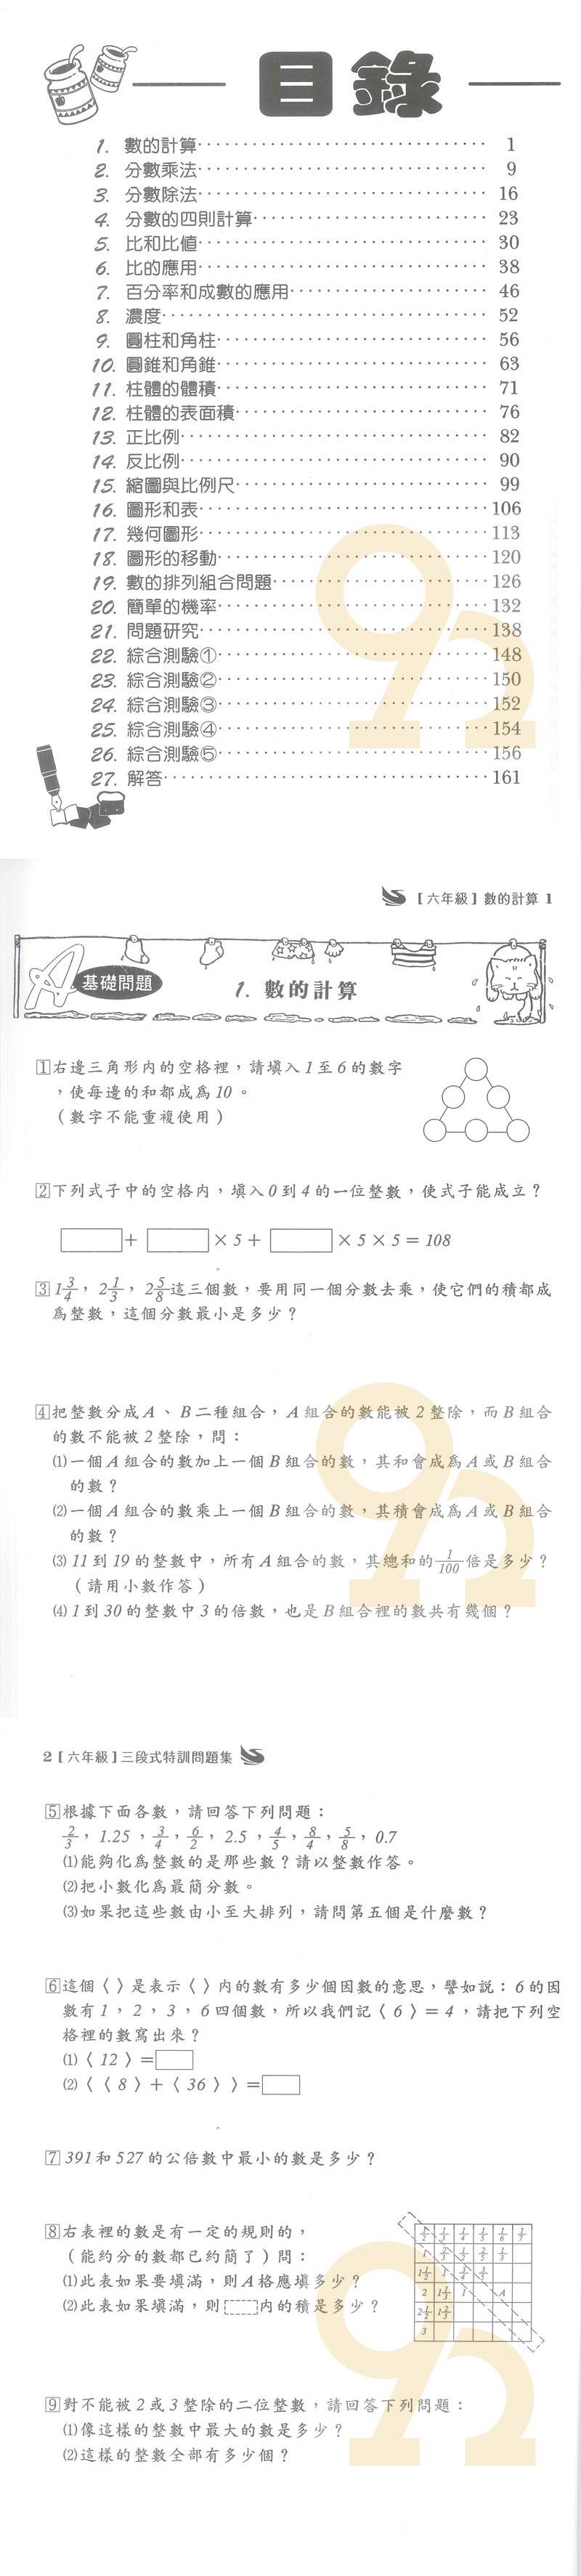 王百世國小3段式數學特訓問題集6年級 92號book櫃 參考書專賣店